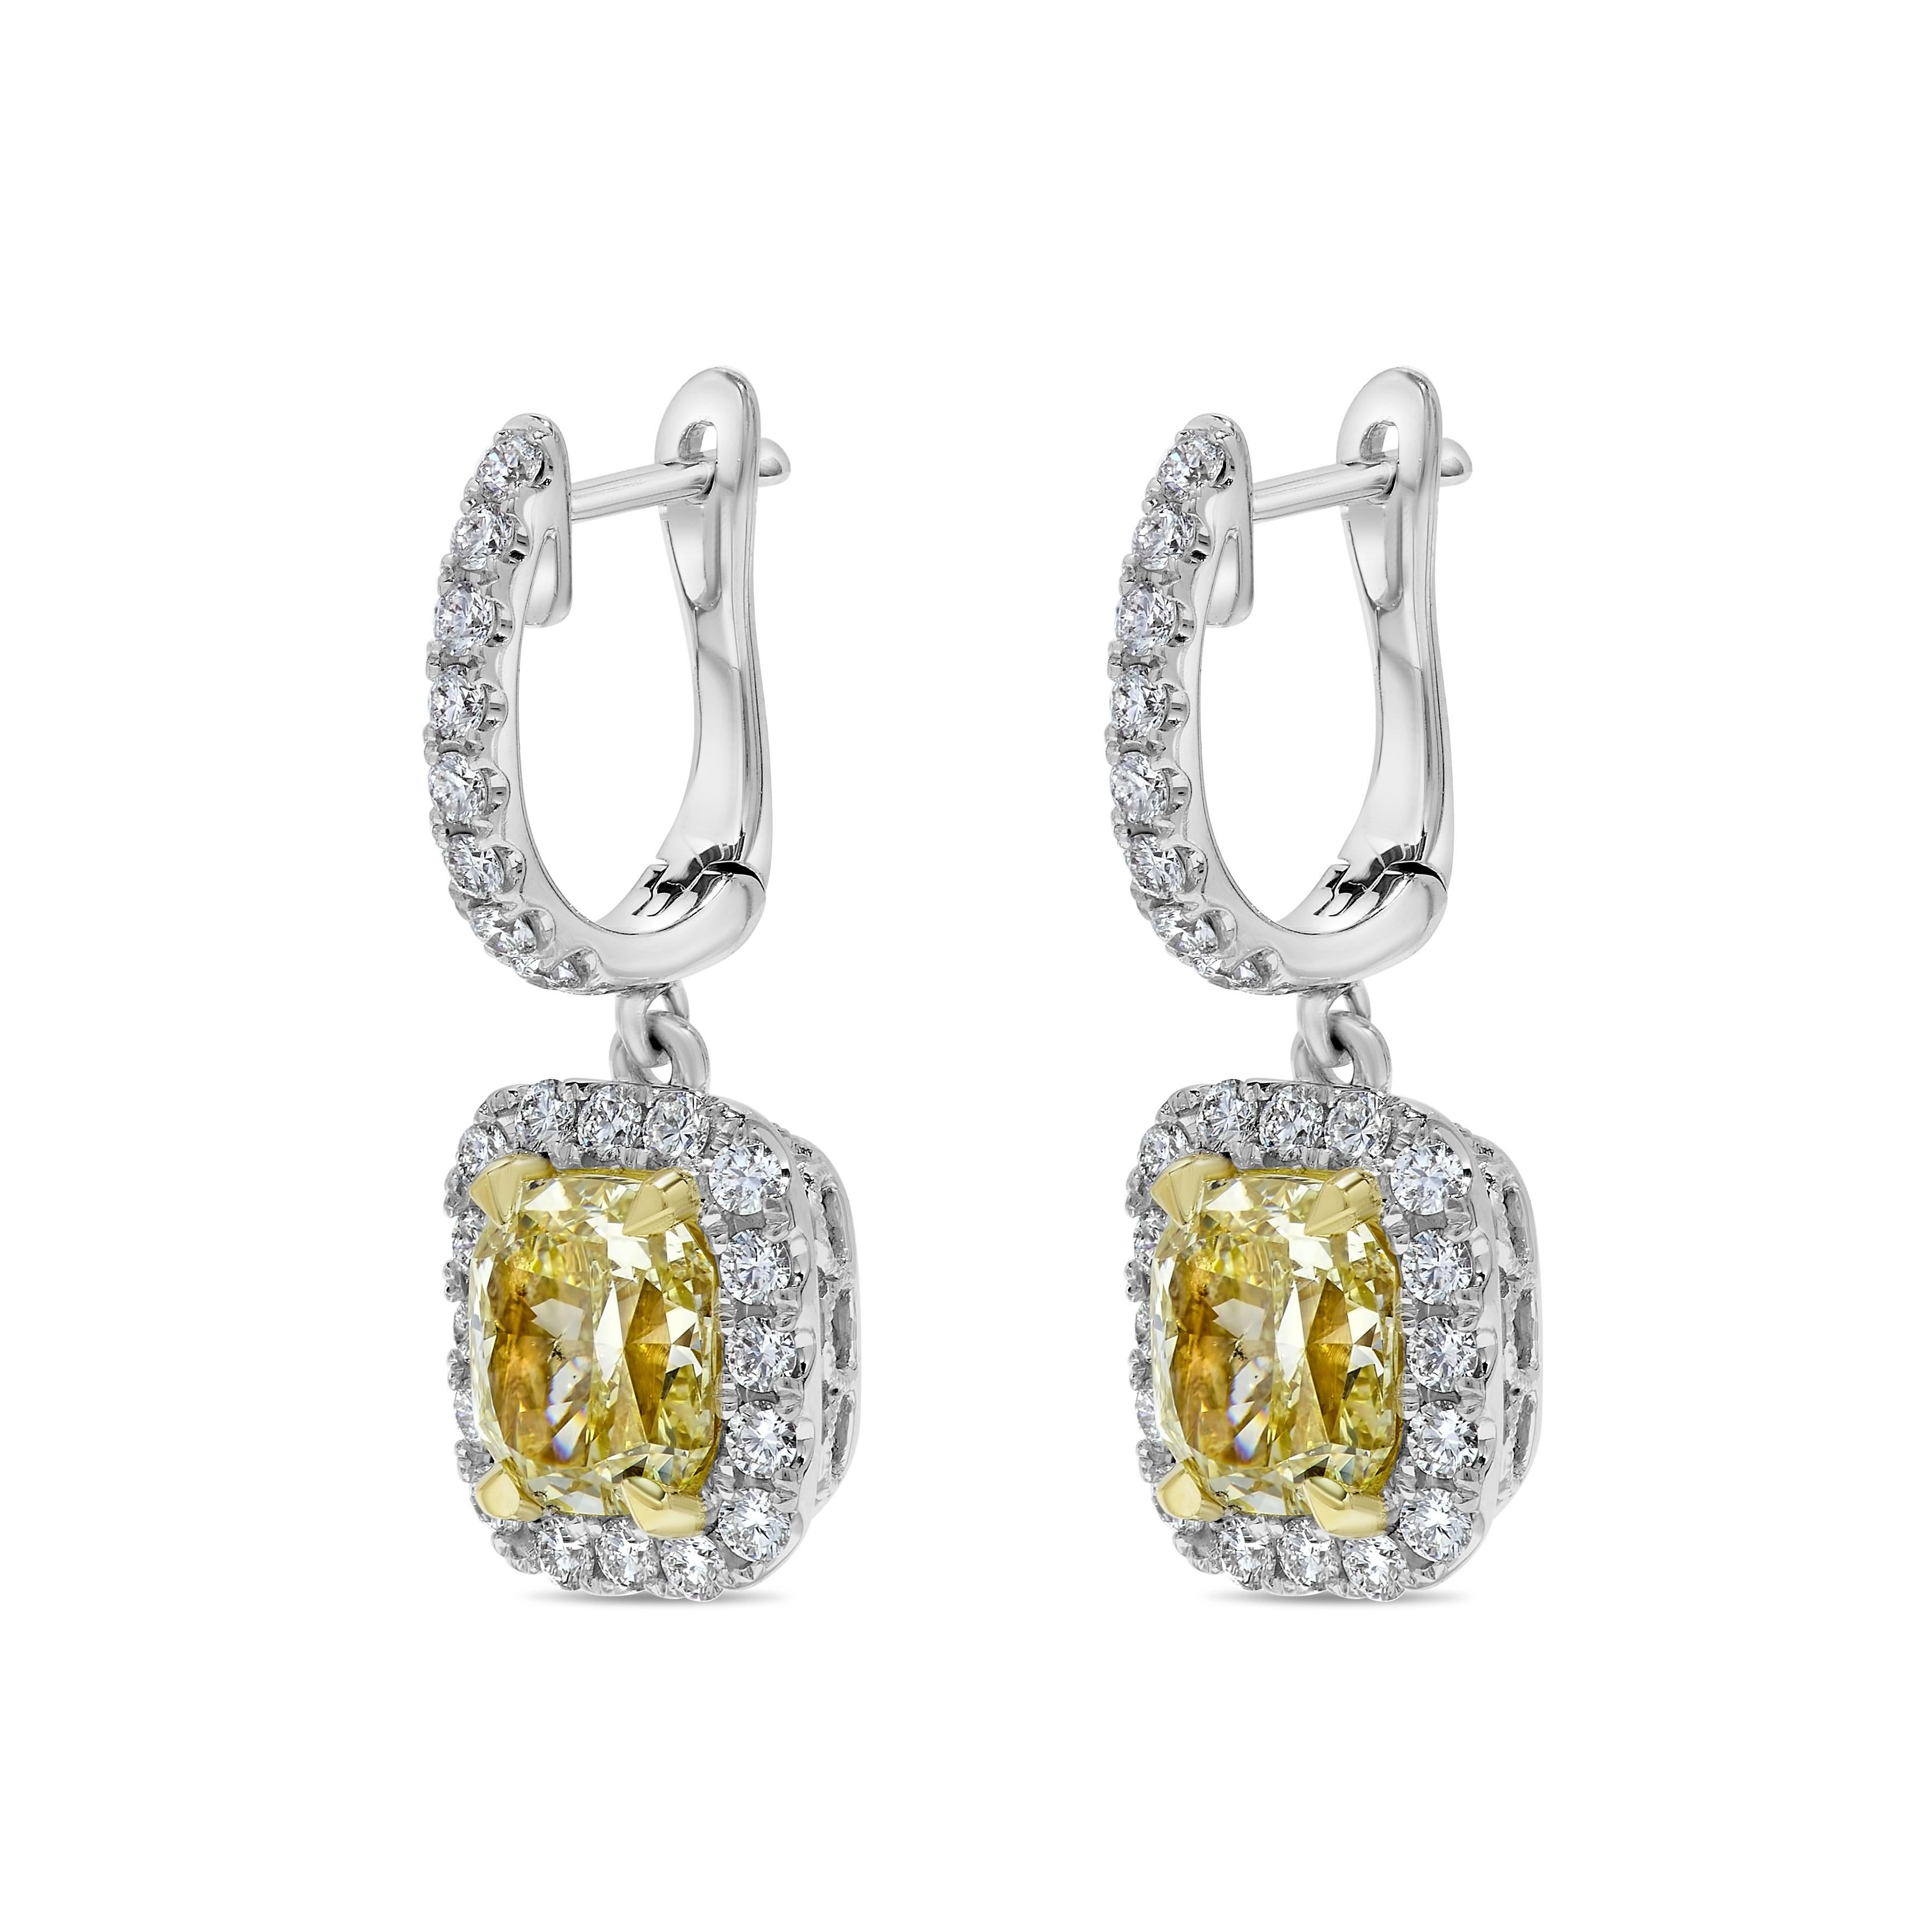 Les boucles d'oreilles classiques en diamant certifié GIA de Raregemworld. Monté dans une belle monture en or jaune et blanc 18 carats avec des diamants jaunes naturels de taille coussin. Les diamants jaunes sont entourés d'une mêlée de diamants